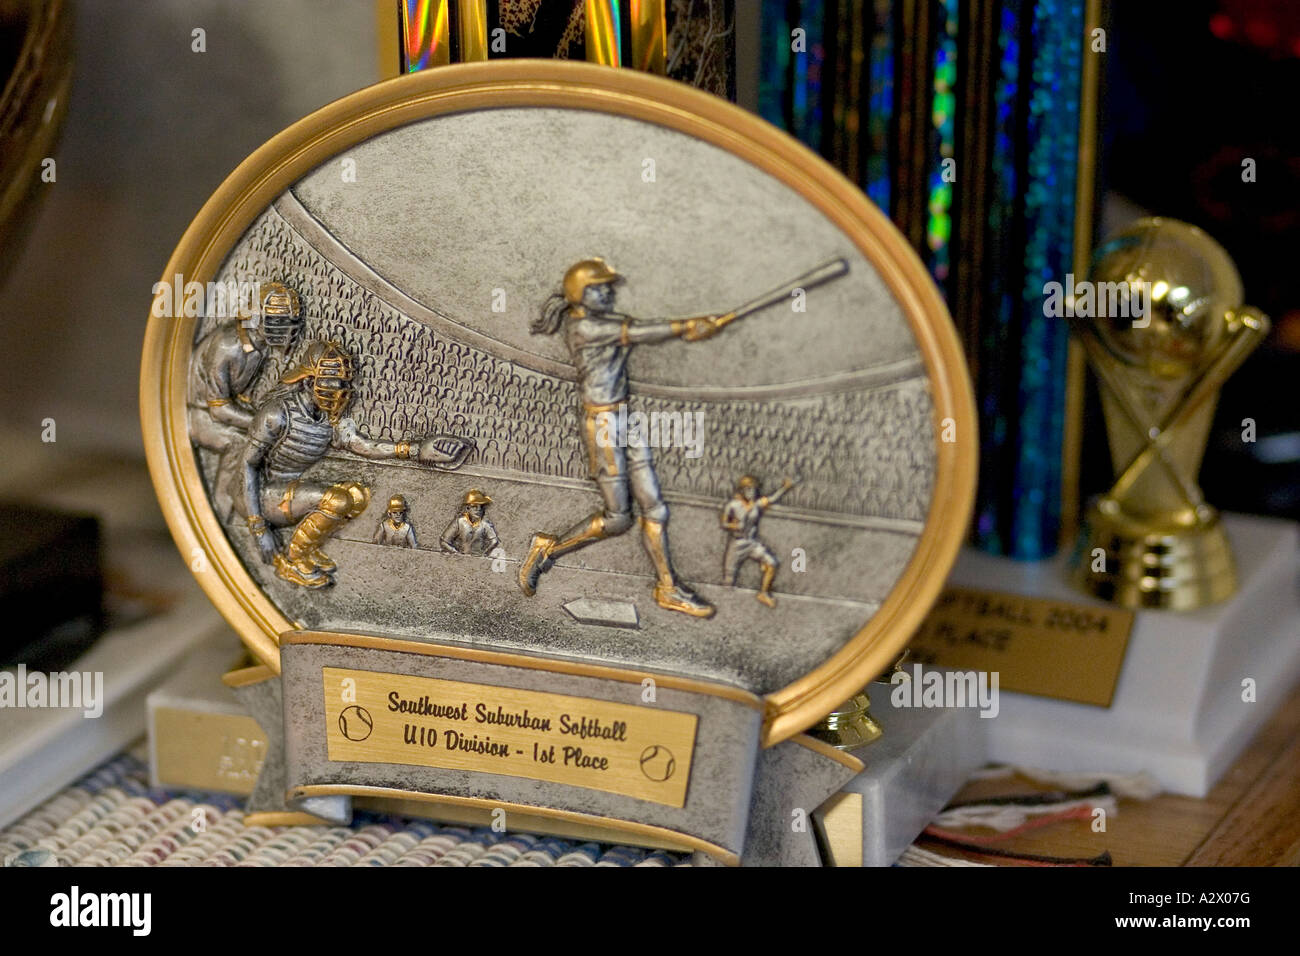 Primo posto del trofeo per le ragazze softball. Downers Grove Illinois IL USA Foto Stock